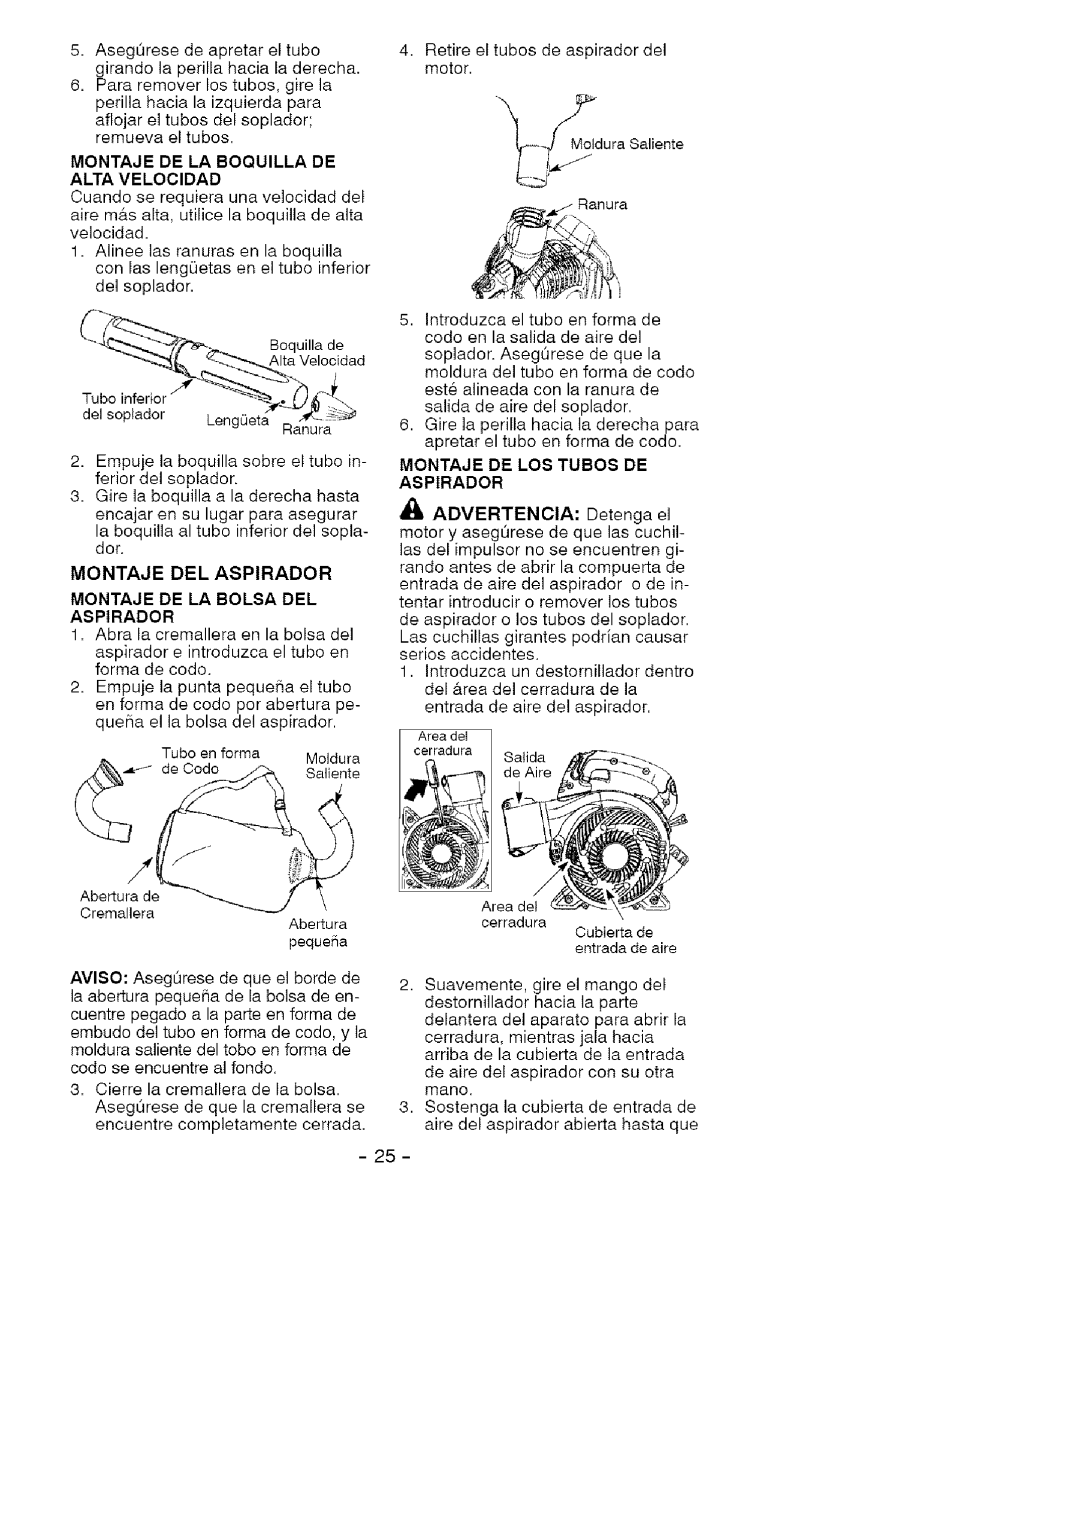 Craftsman 358.79477 manual Montaje De La Boquilla De Alta Velocidad, Montaje De La Bolsa Del Aspirador 